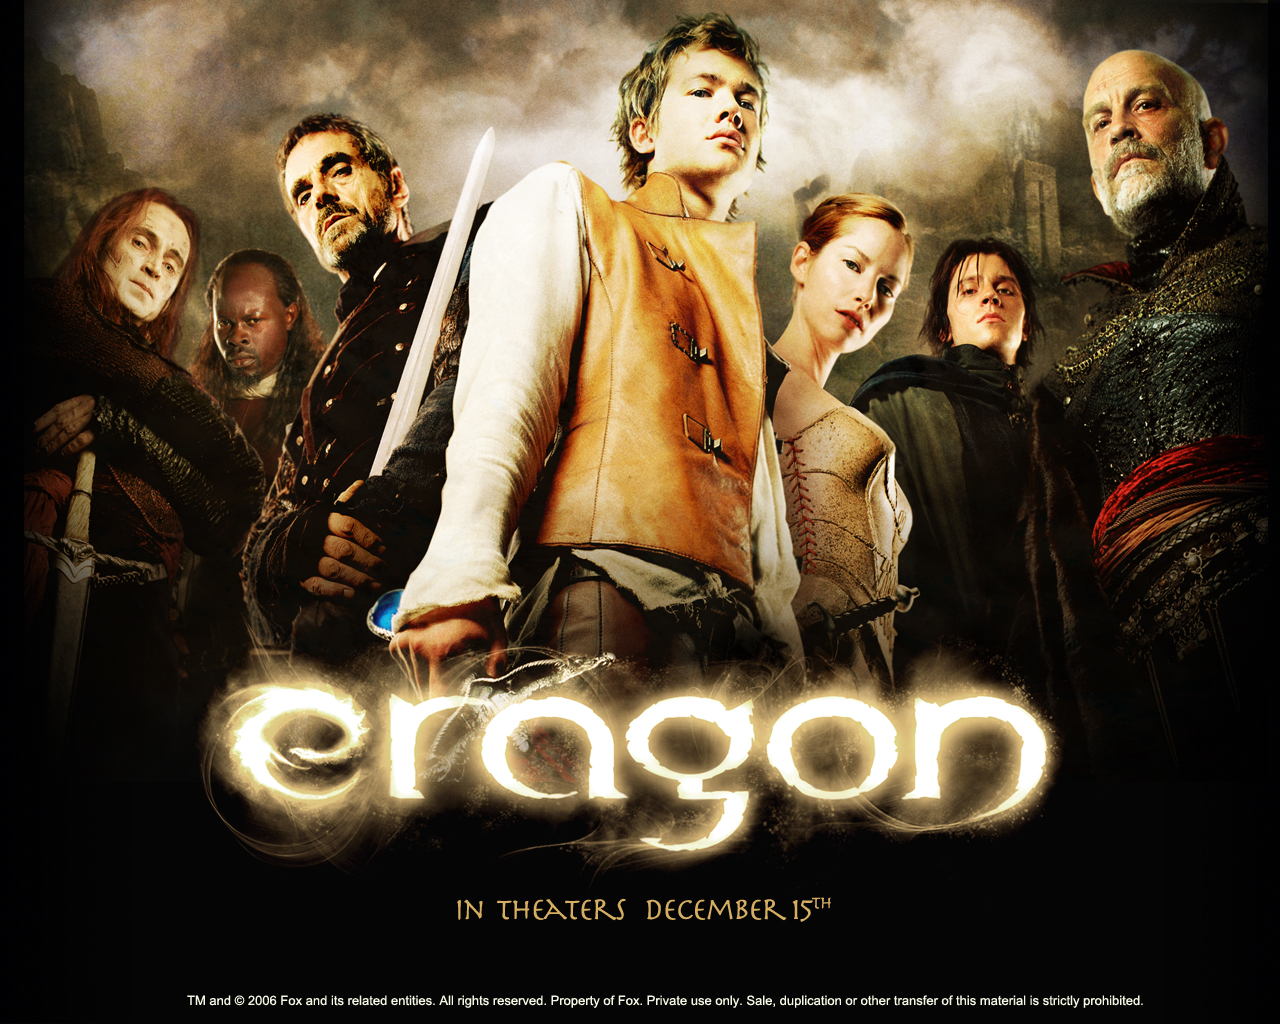 Edward Speleers in Eragon